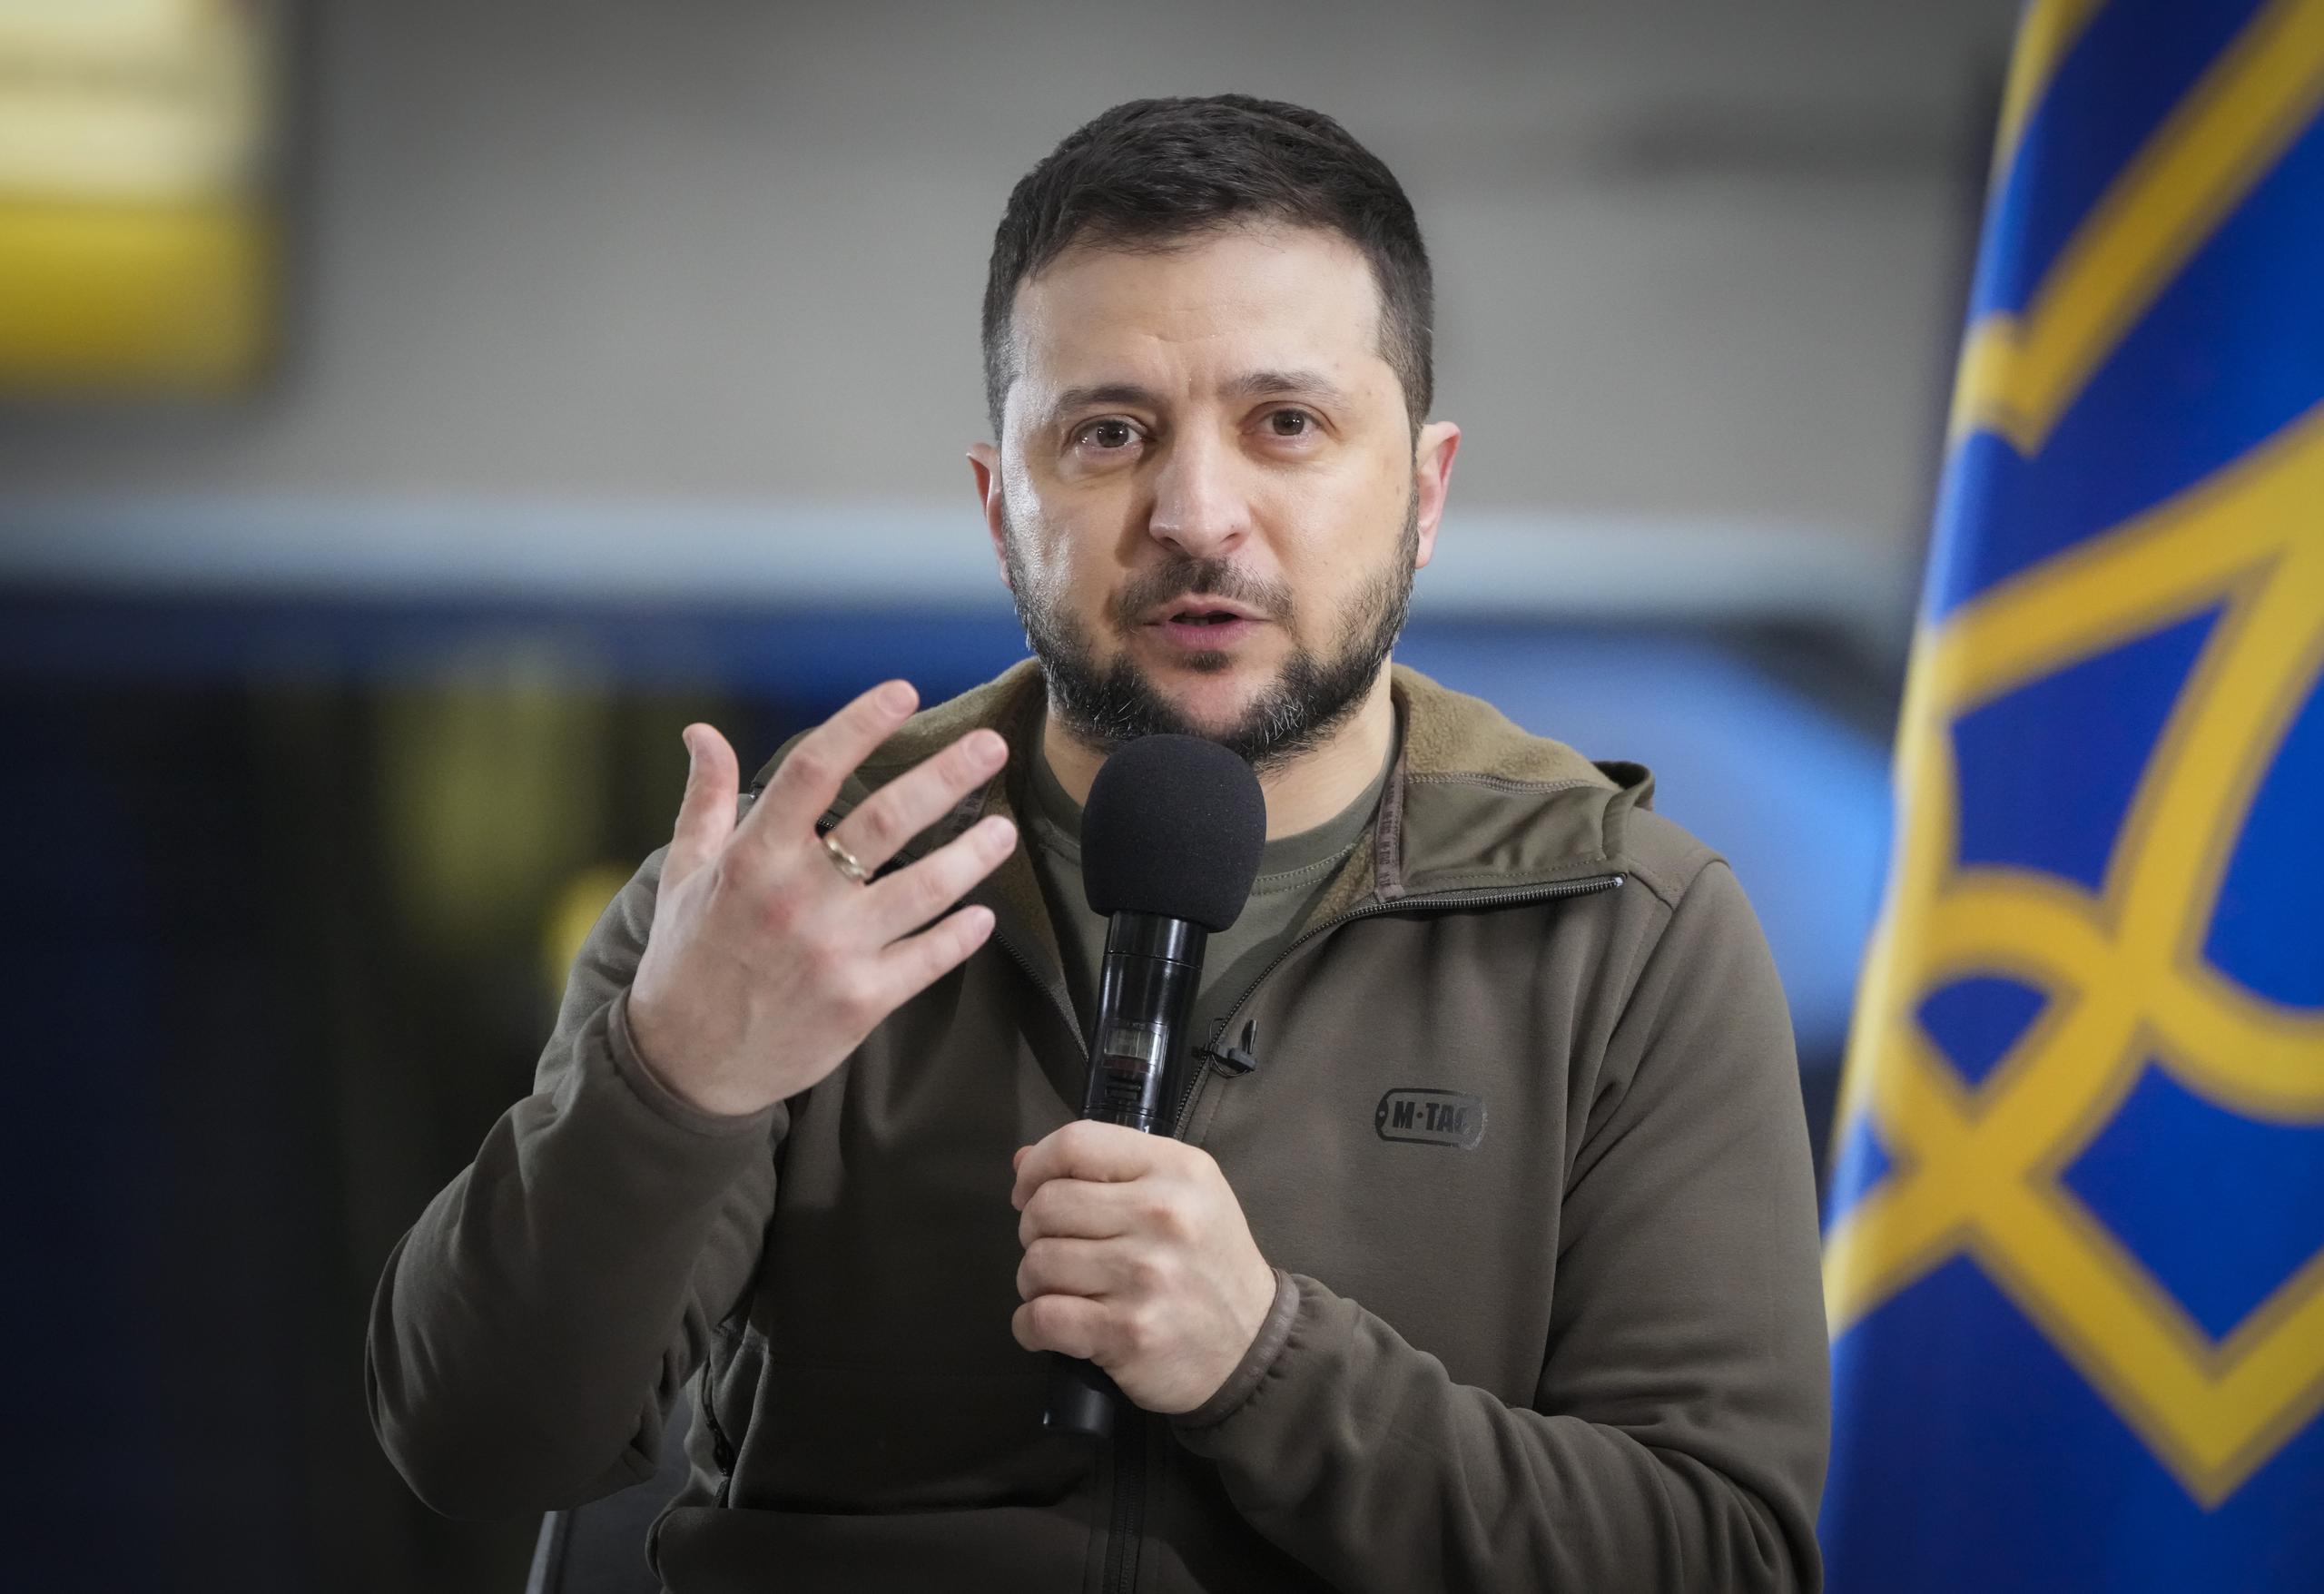 El presidente Volodymyr Zelenskyy añade que desea que la próxima edición del certamen ocurra en una Ucrania “libre, pacífica y restaurada”.